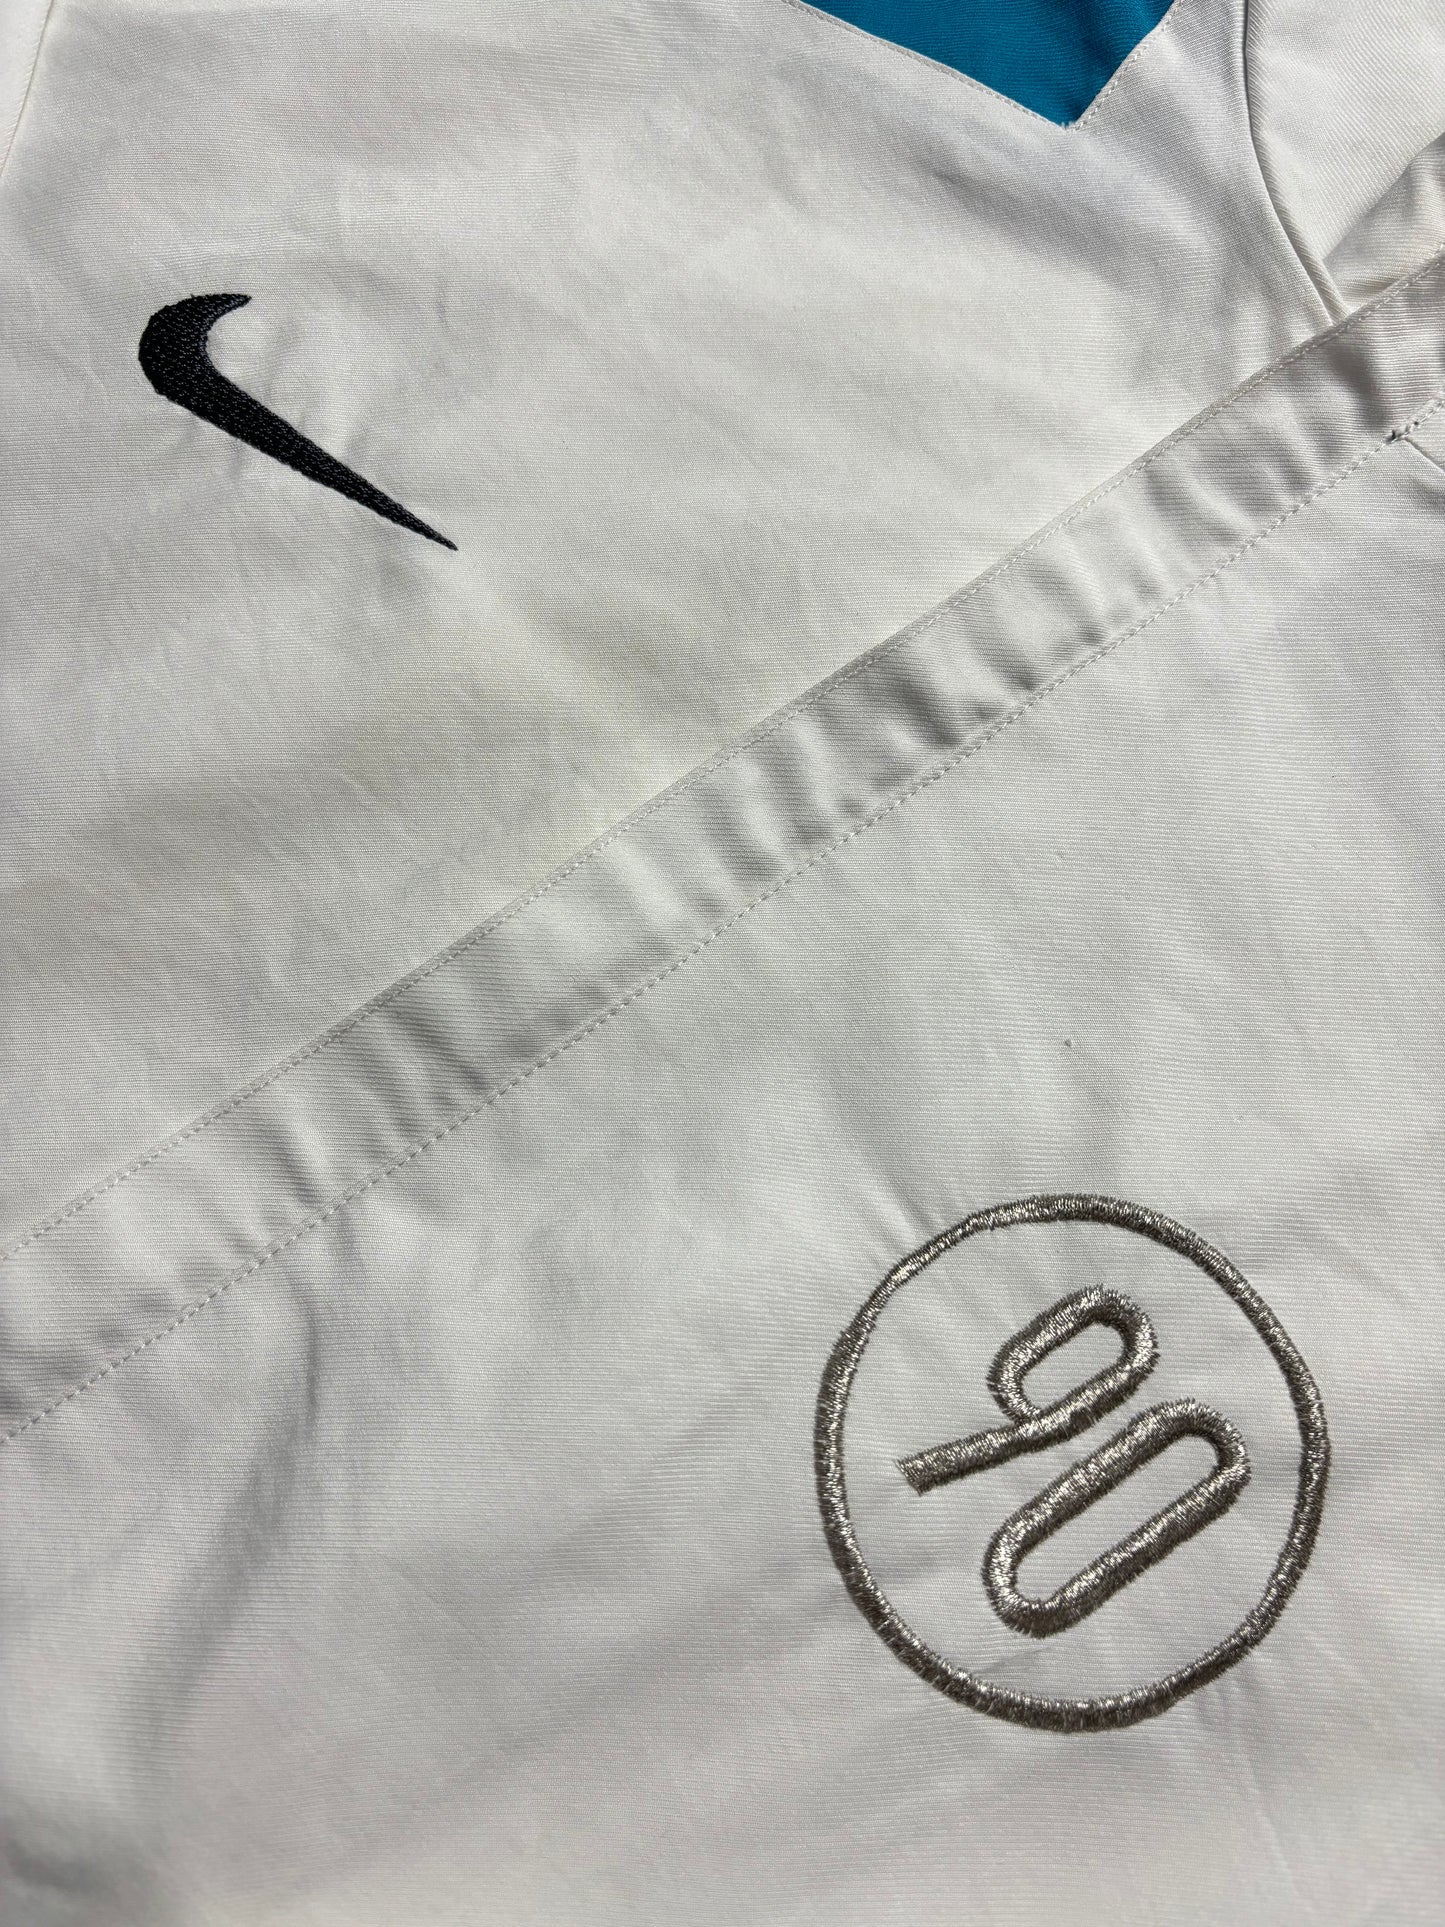 Sudadera Nike Total 90 retro - XL